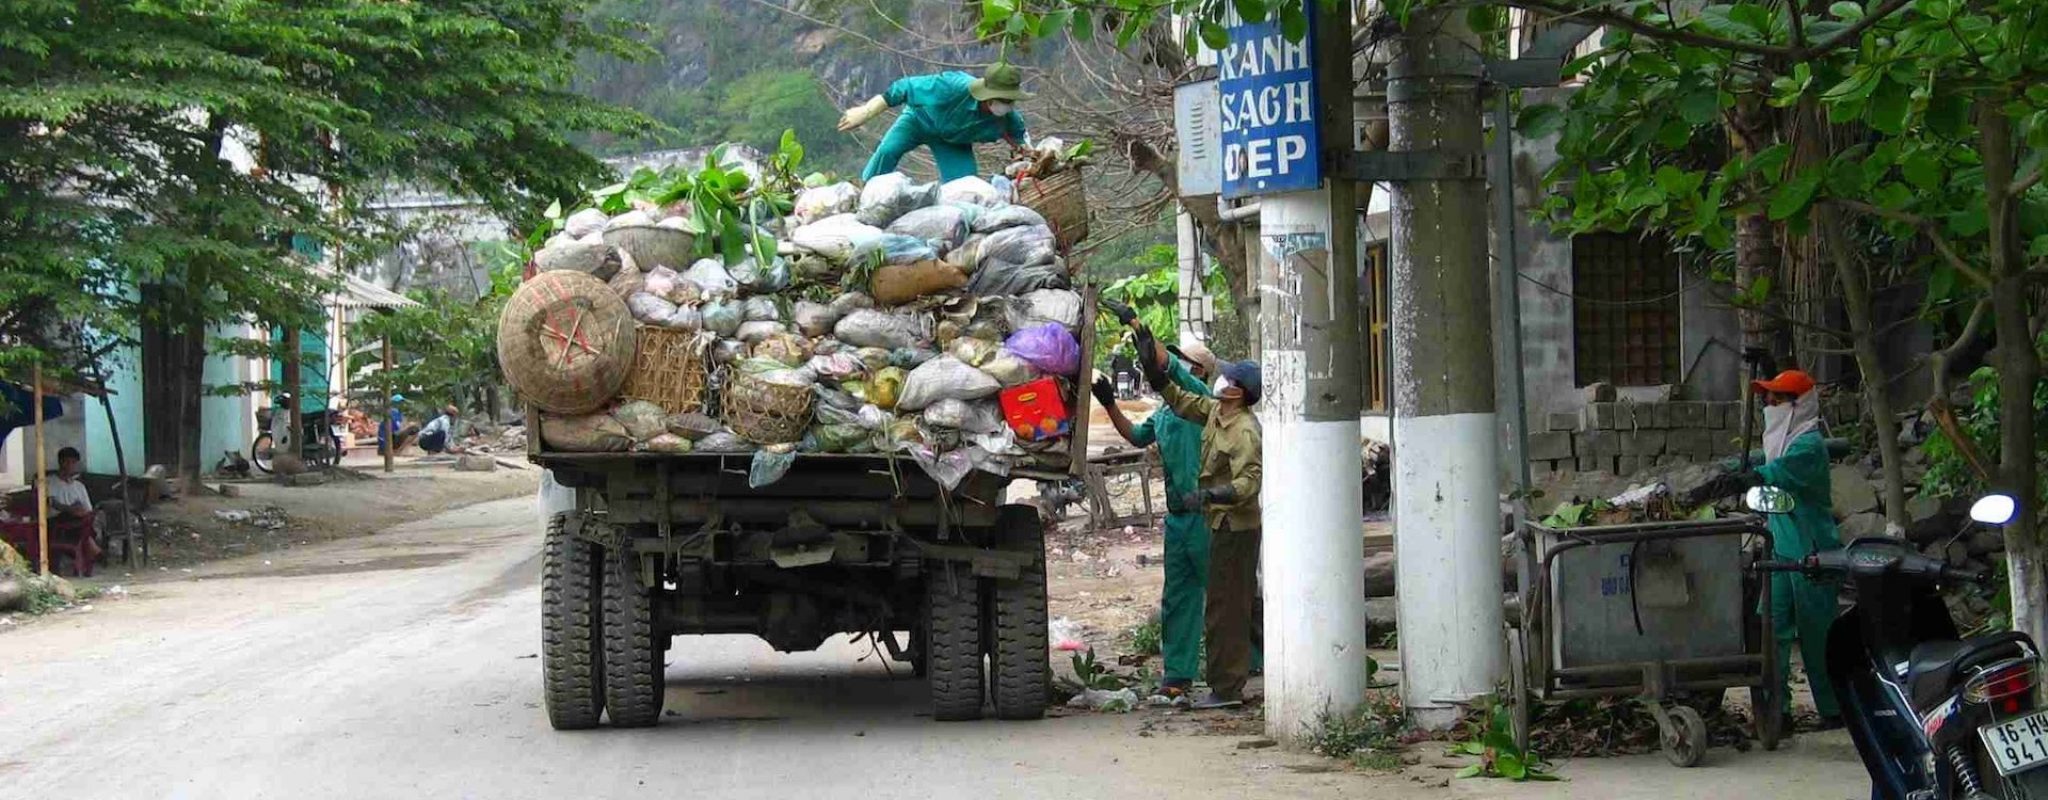 Waste collection in Vietnam